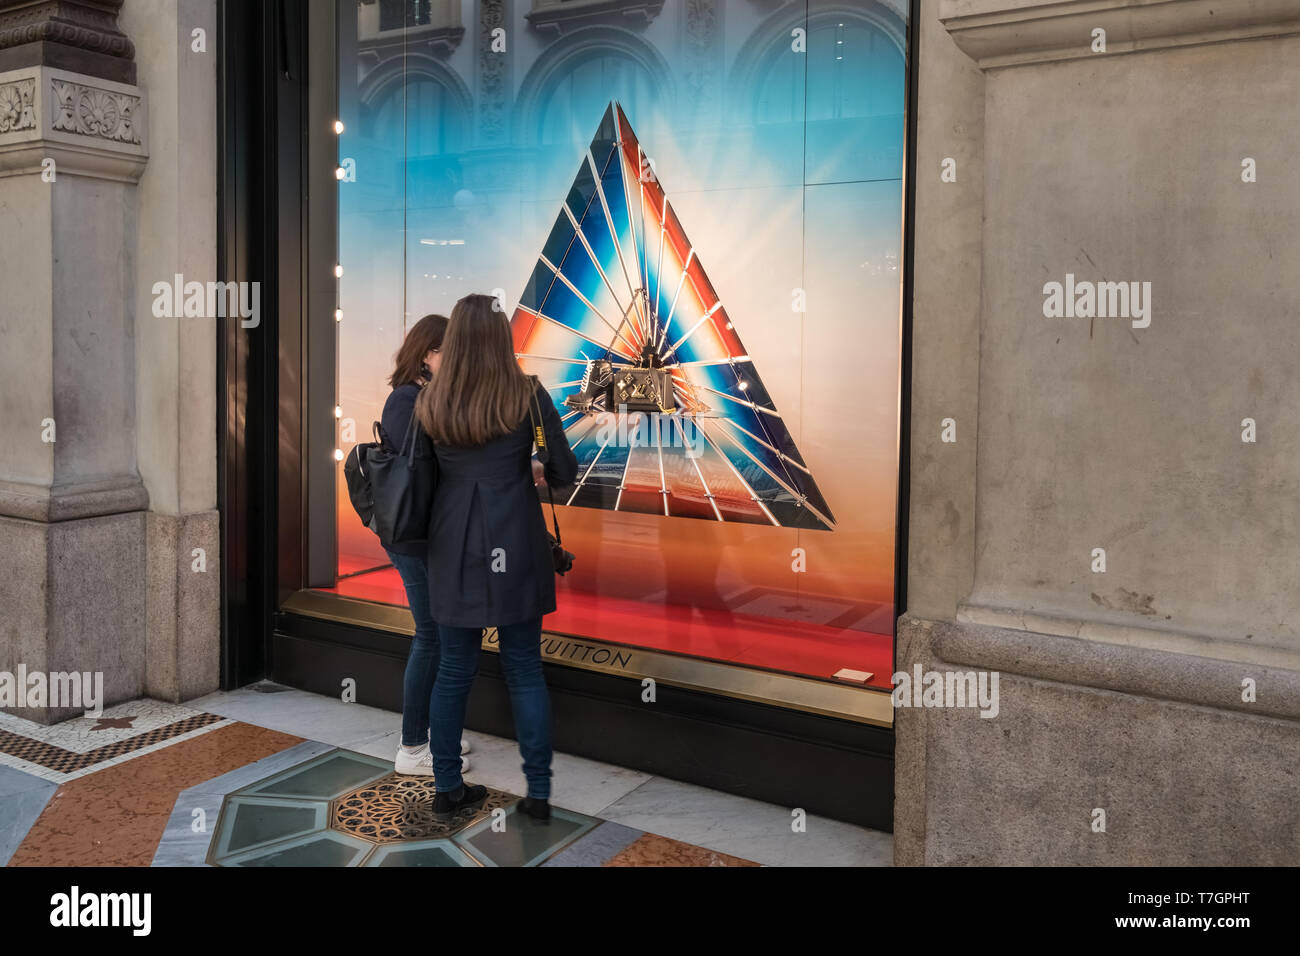 Galleria Vittorio Emanuele II Shopping Arkade, Mailand, Italien, zwei Frauen in Luxus high end Fashion Marke Louis Vuitton Designs im Shop Fenster suchen. Stockfoto